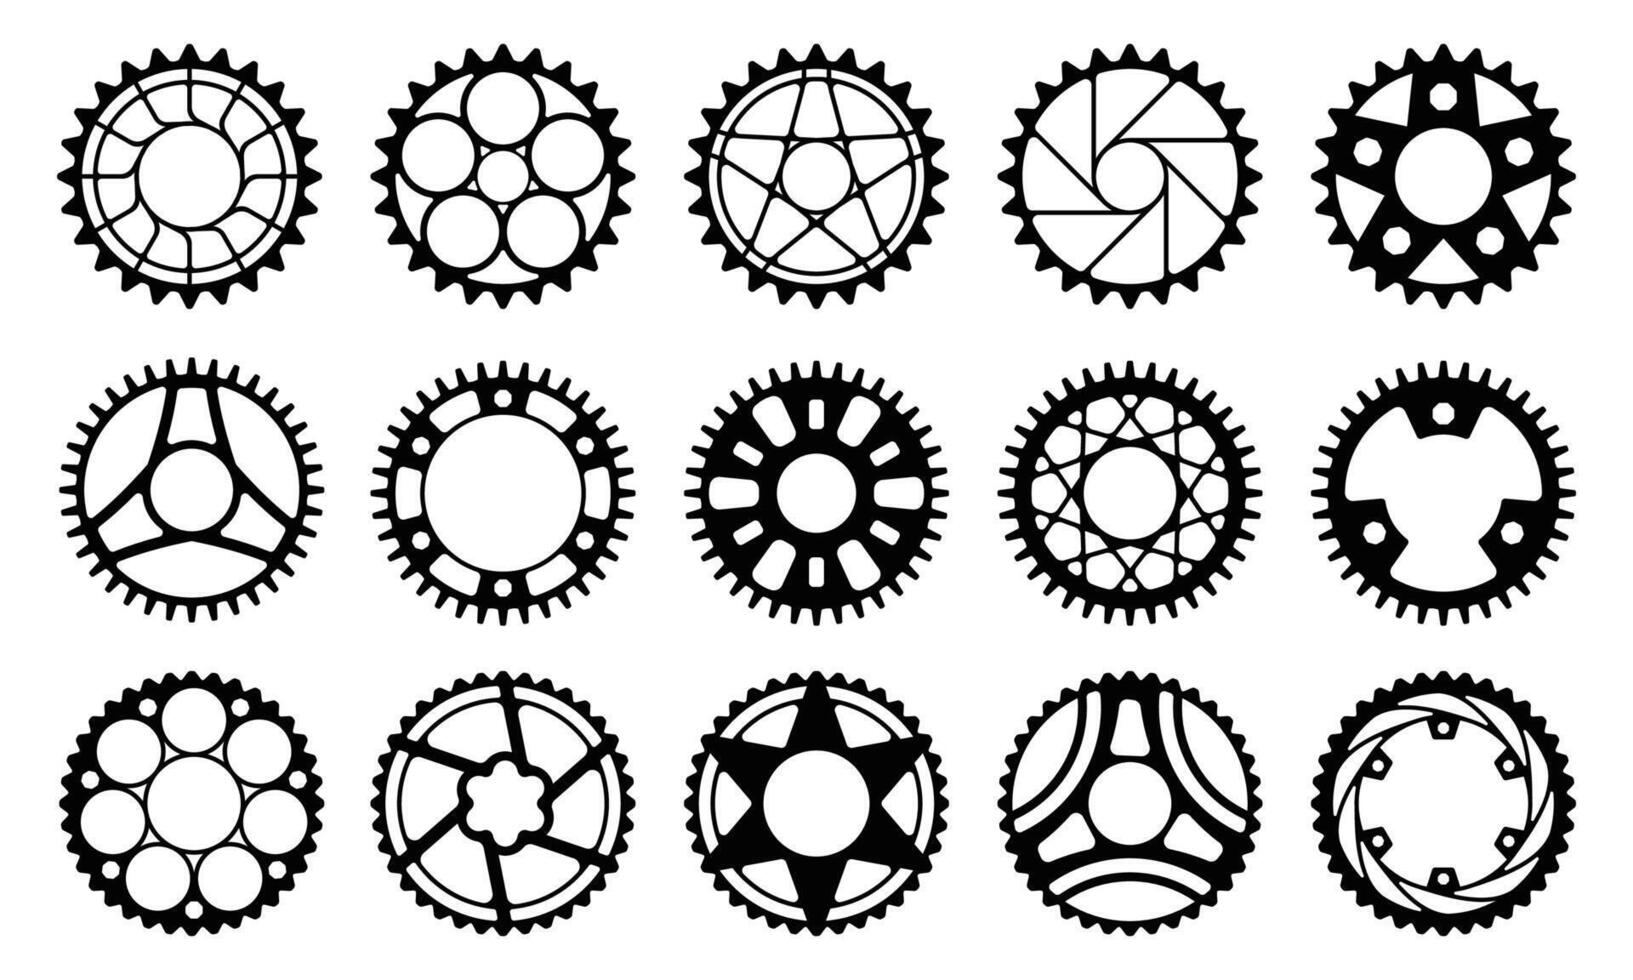 vélo équipement roue. usine vélo pignon avec roue dentée, industriel mécanisme circulaire disque pour chaîne conduire. vecteur illustration